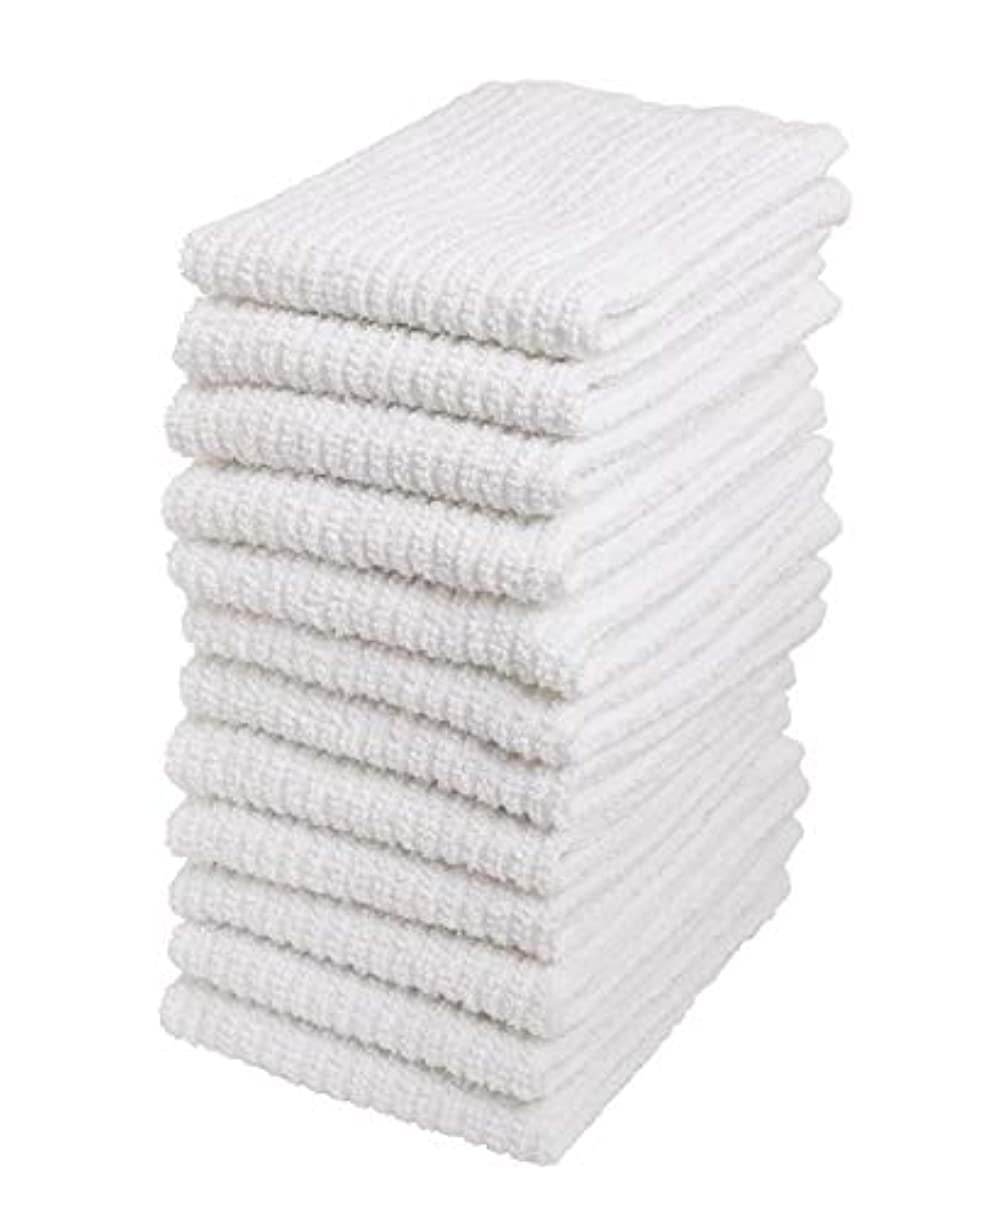 16X19 Wholesale White Bar Towels - Towel Supercenter